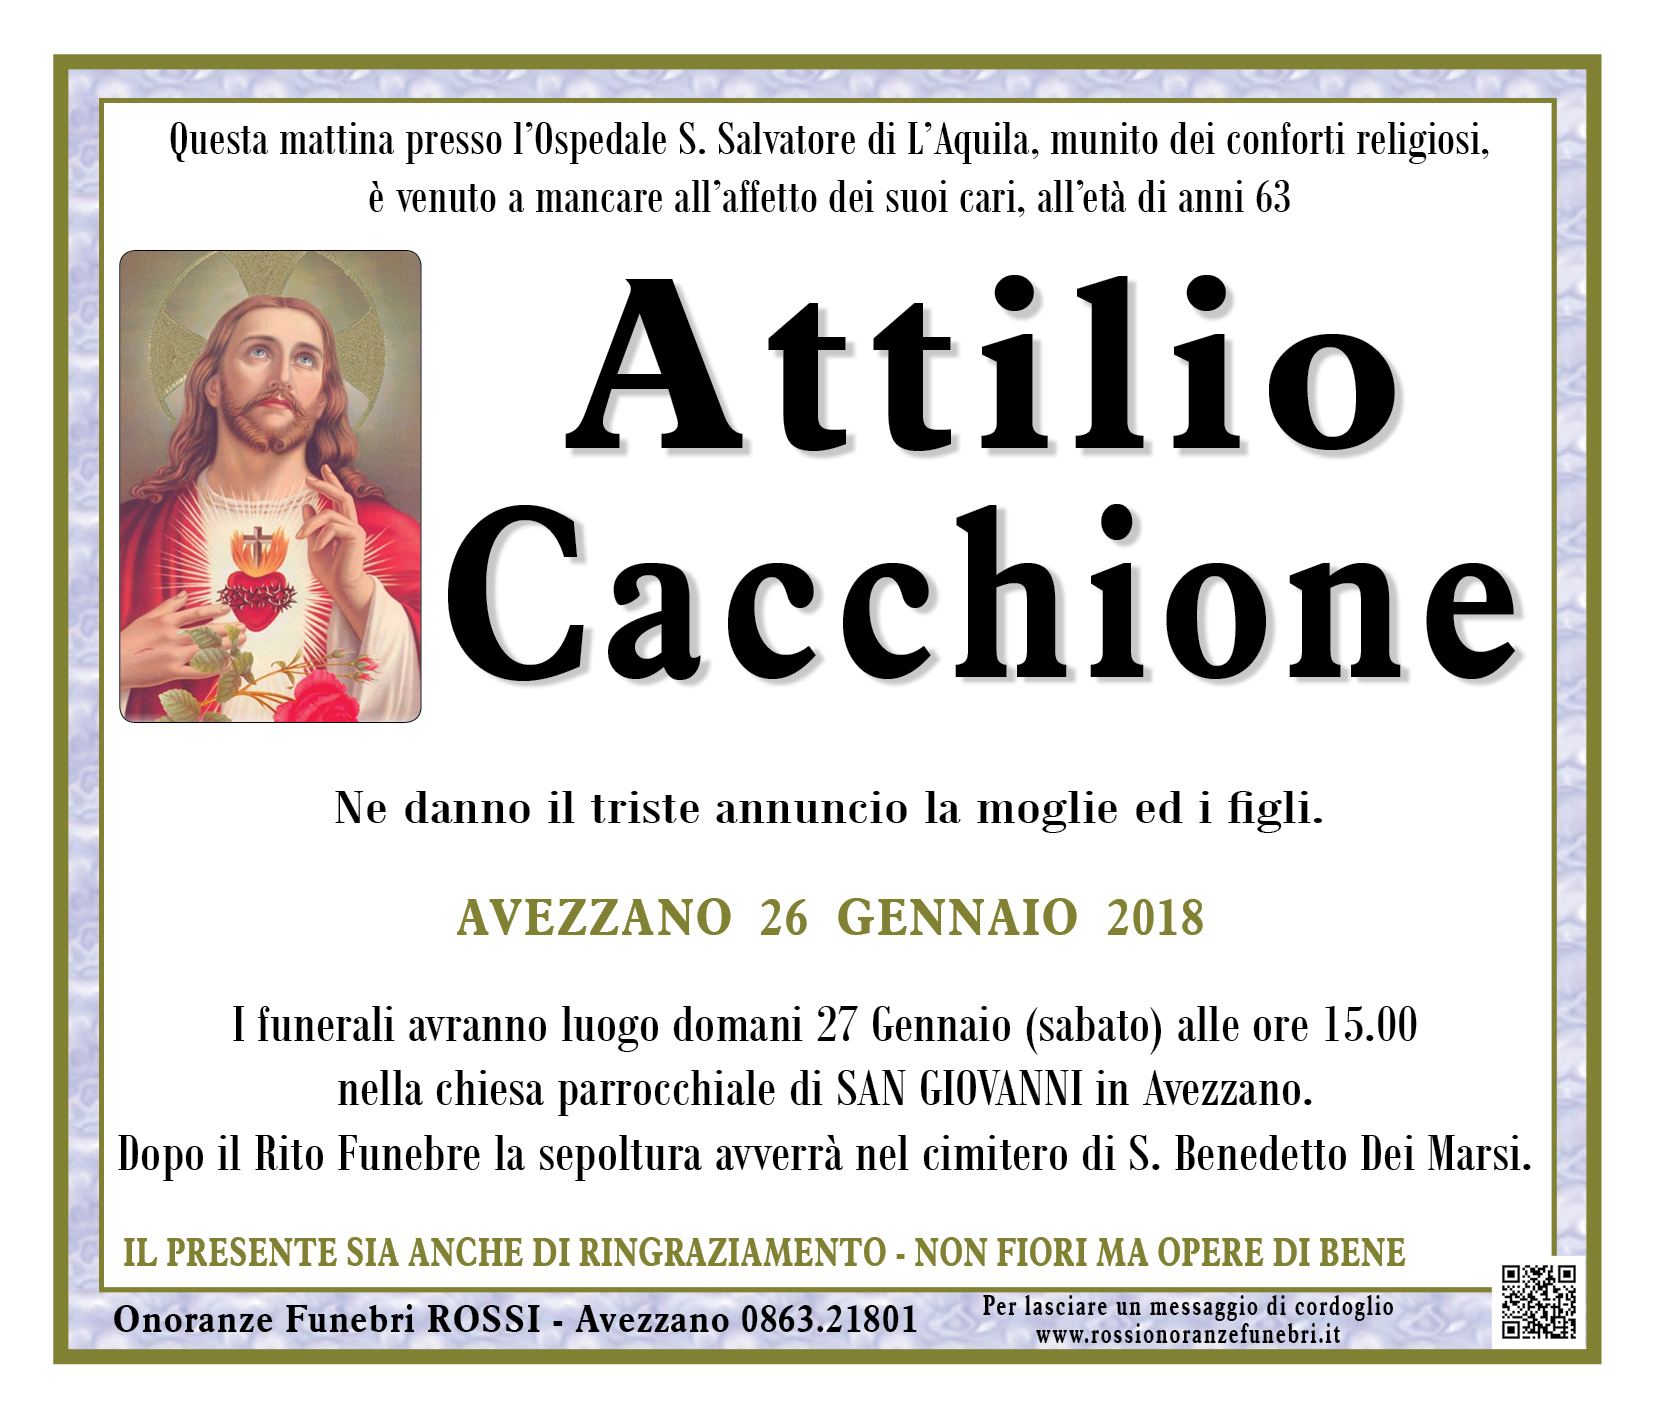 Attilio Cacchione